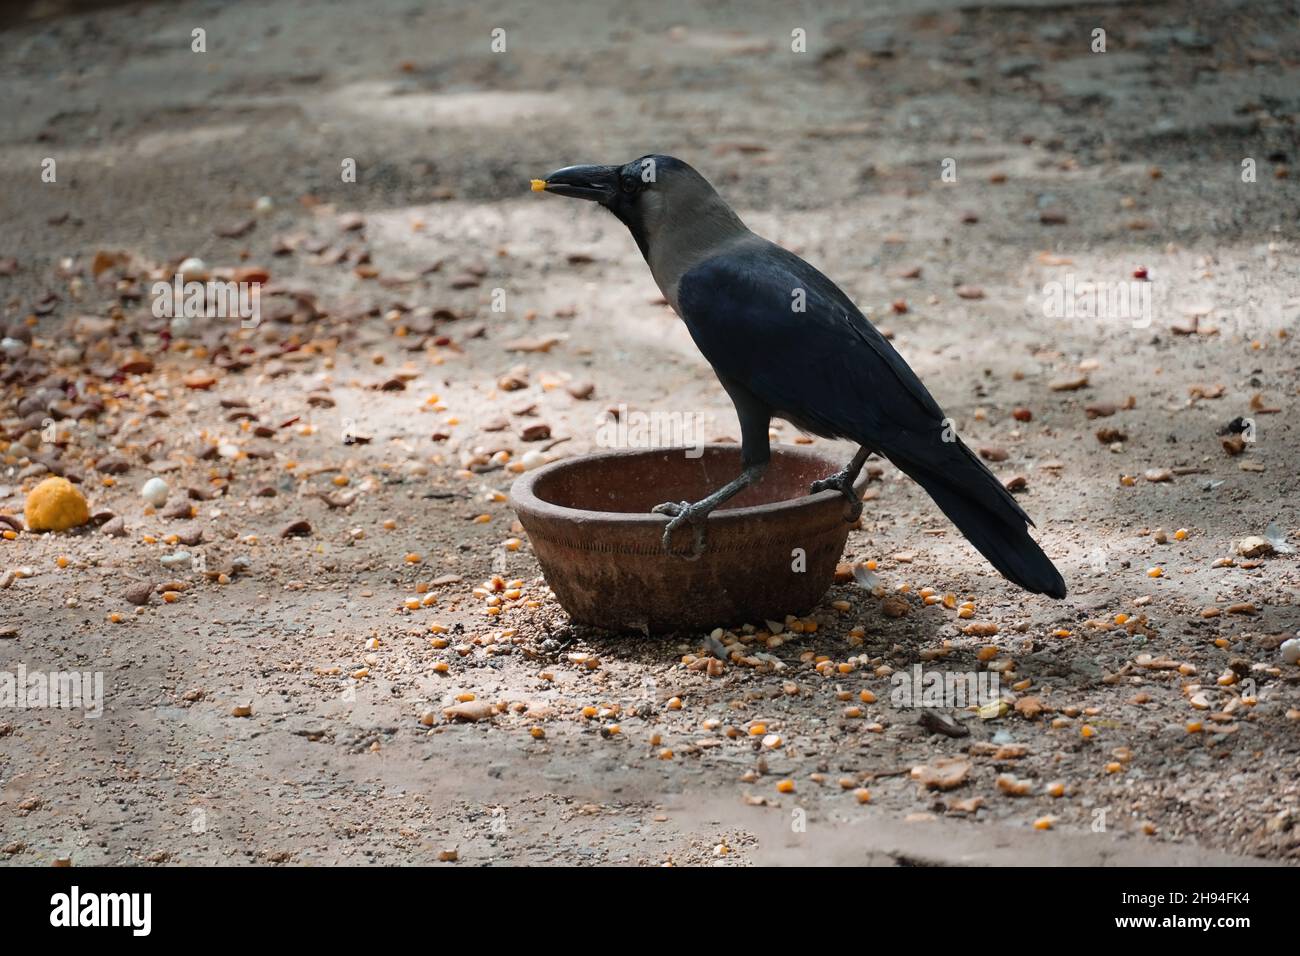 Imagen de agua potable de cuervo sediento al aire libre Foto de stock